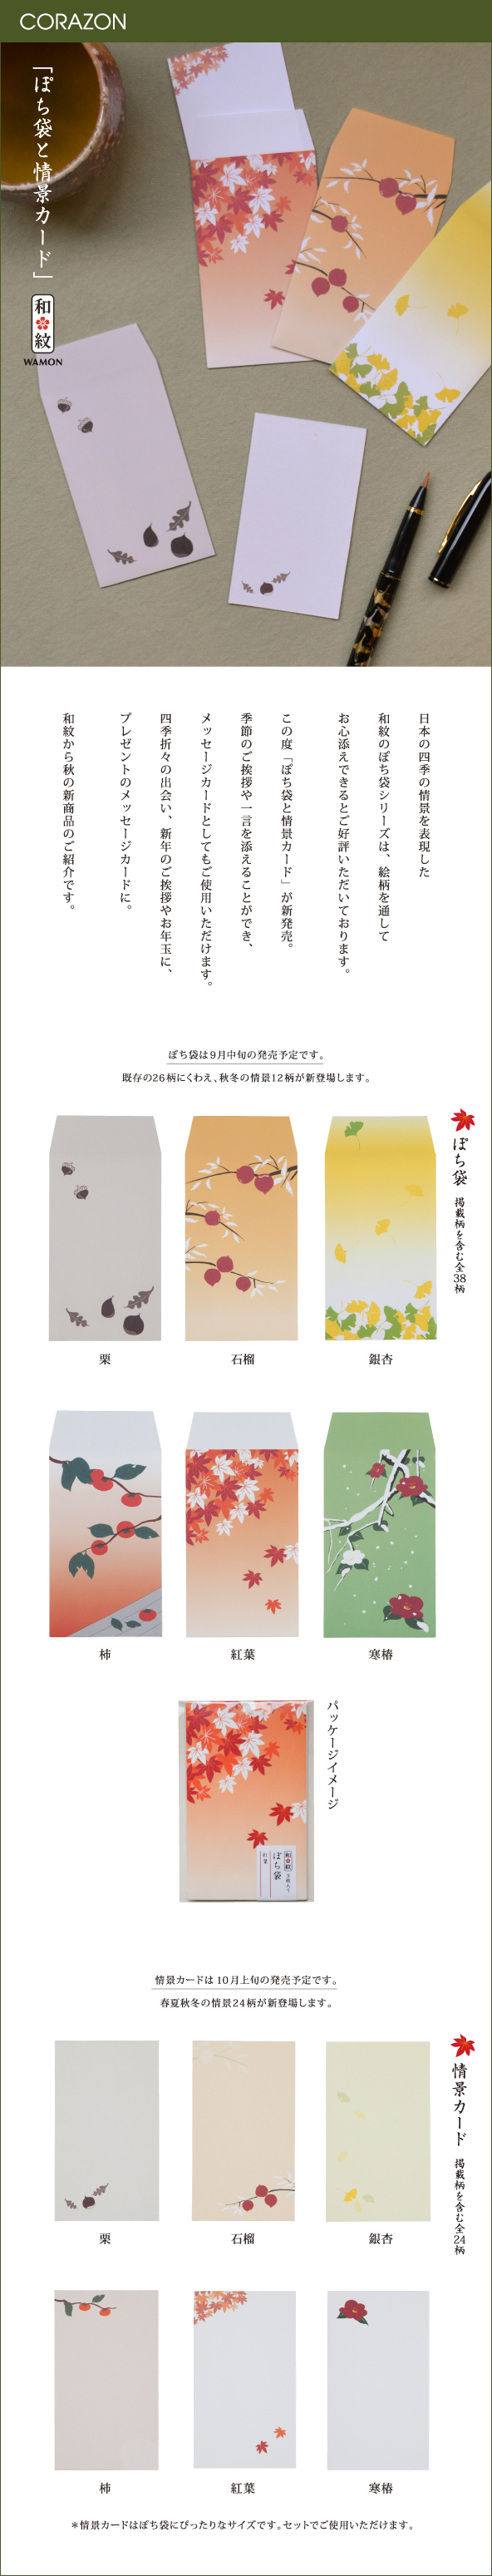 CORAZONメルマガ　20150908<br>

「ぽち袋と情景カード」<br>
日本の四季の情景を表現した<br>
和紋のぽち袋シリーズは、絵柄を通して<br>
お心添えできるとご好評いただいております。<br>
<br>
この度「ぽち袋と情景カード」が新発売。<br>
季節のご挨拶や一言を添えることができ、<br>
メッセージカードとしてもご使用いただけます。<br>
四季折々の出会い、新年のご挨拶やお年玉に、<br>
プレゼントのメッセージカードに。<br>
<br>
和紋から秋の新商品のご紹介です。<br>
